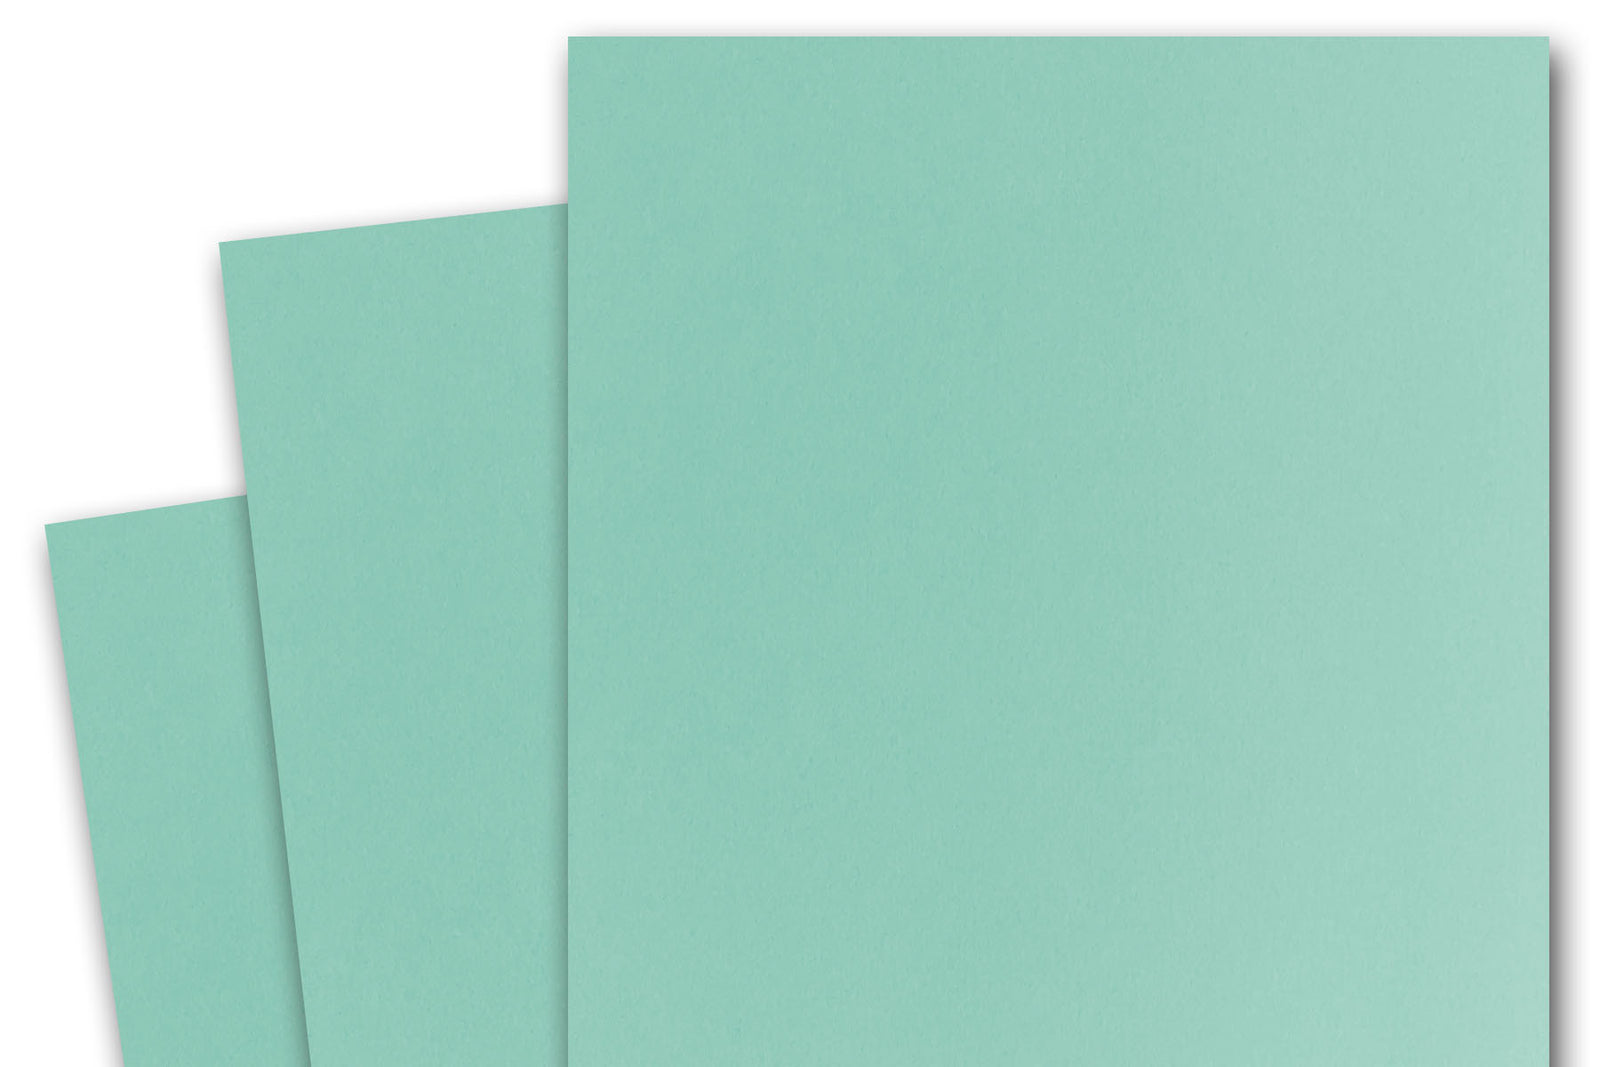 Pop Tone HOT FUDGE brown card stock for paper crafting - CutCardStock